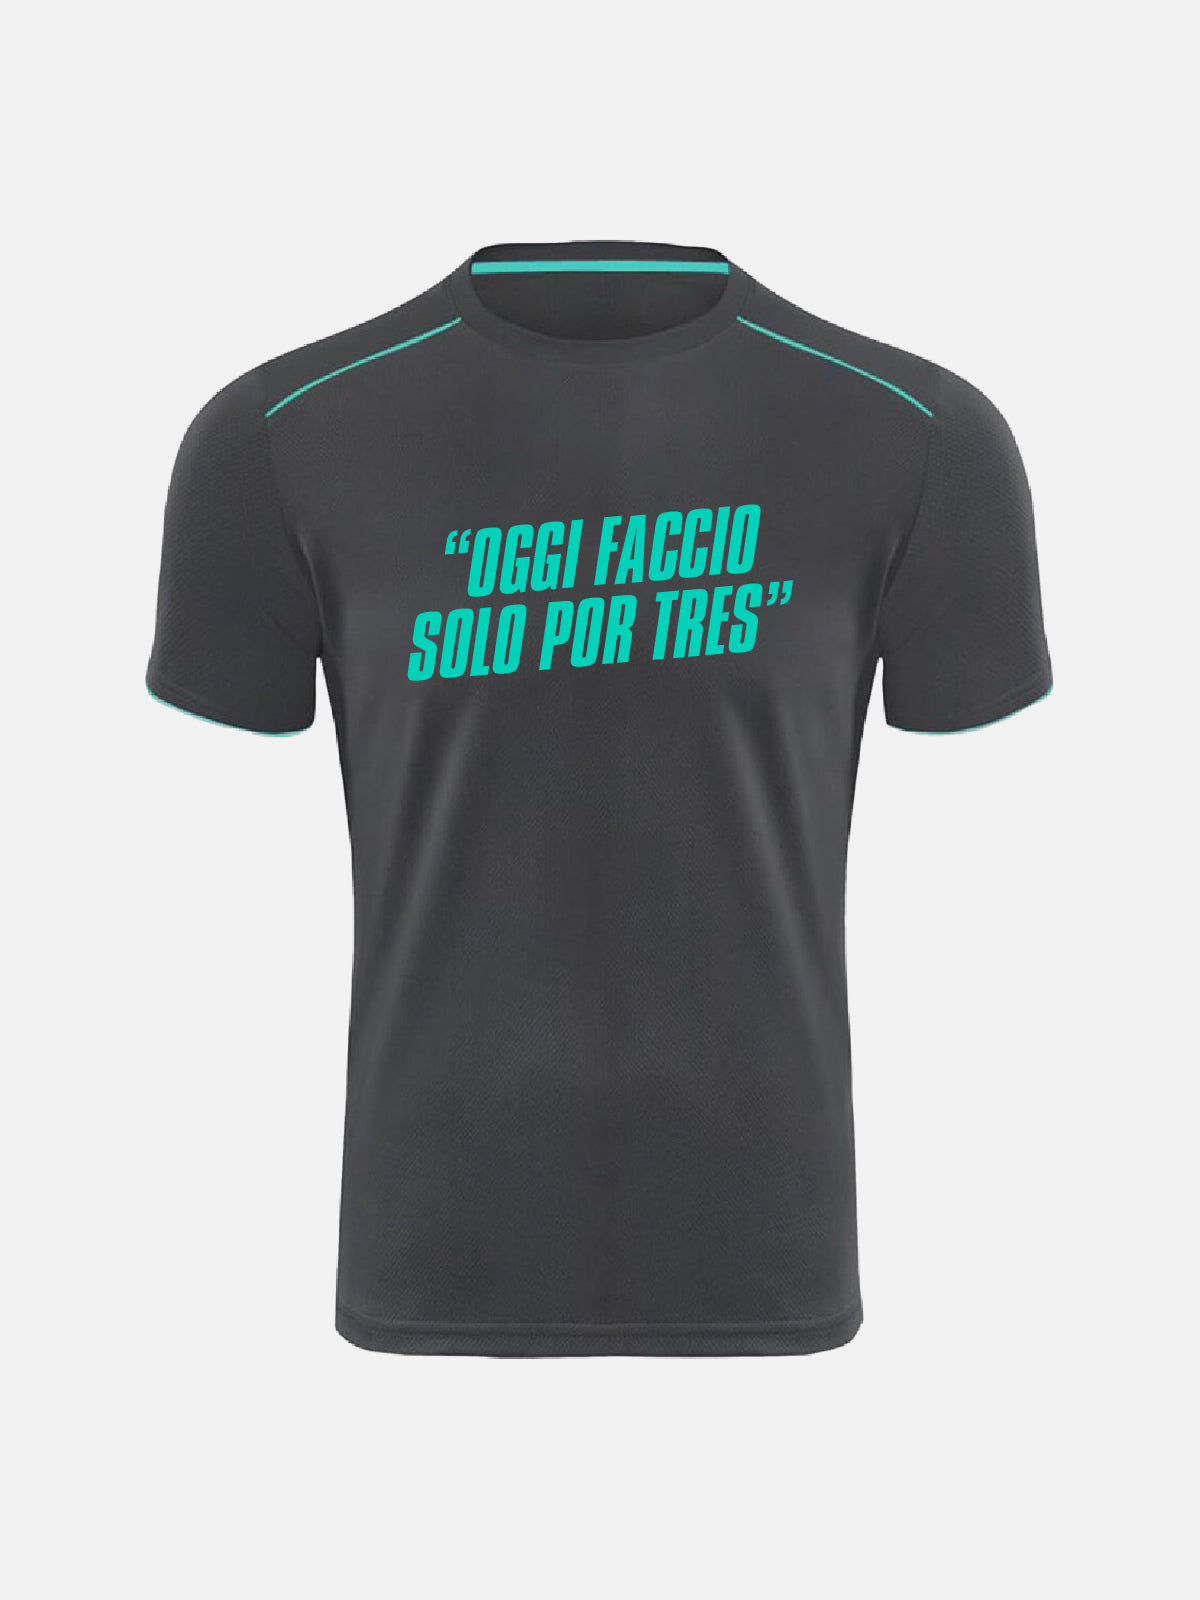 T-shirt Personalizzata - "Oggi Faccio Solo Por Tres"